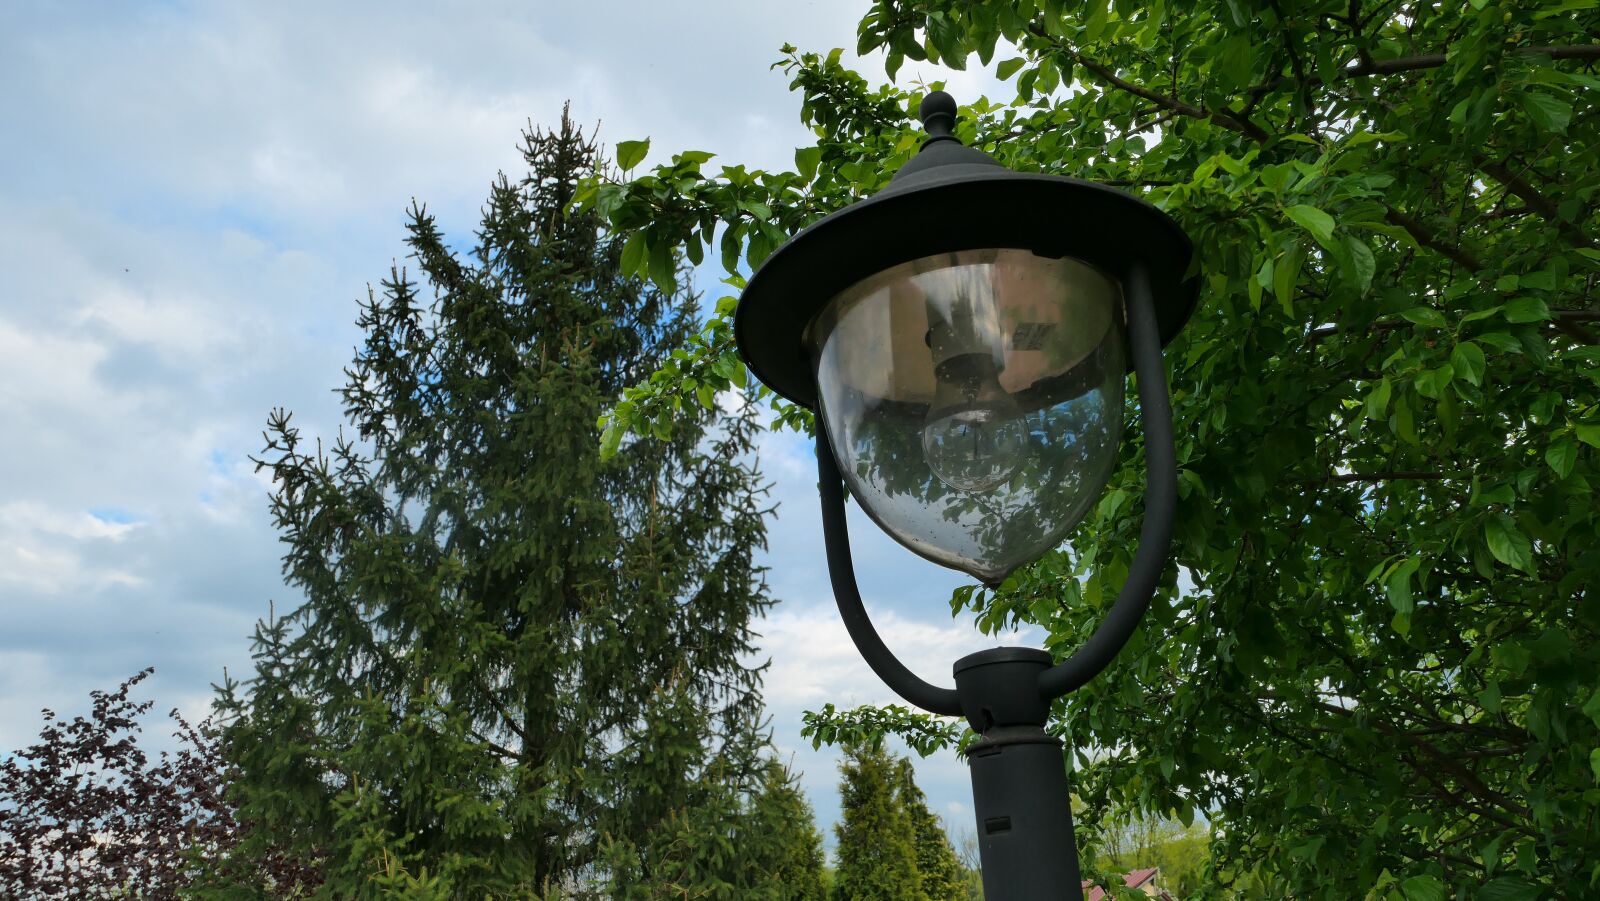 Panasonic Lumix DMC-LX10 (Lumix DMC-LX15) sample photo. Replacement lamp, garden, park photography